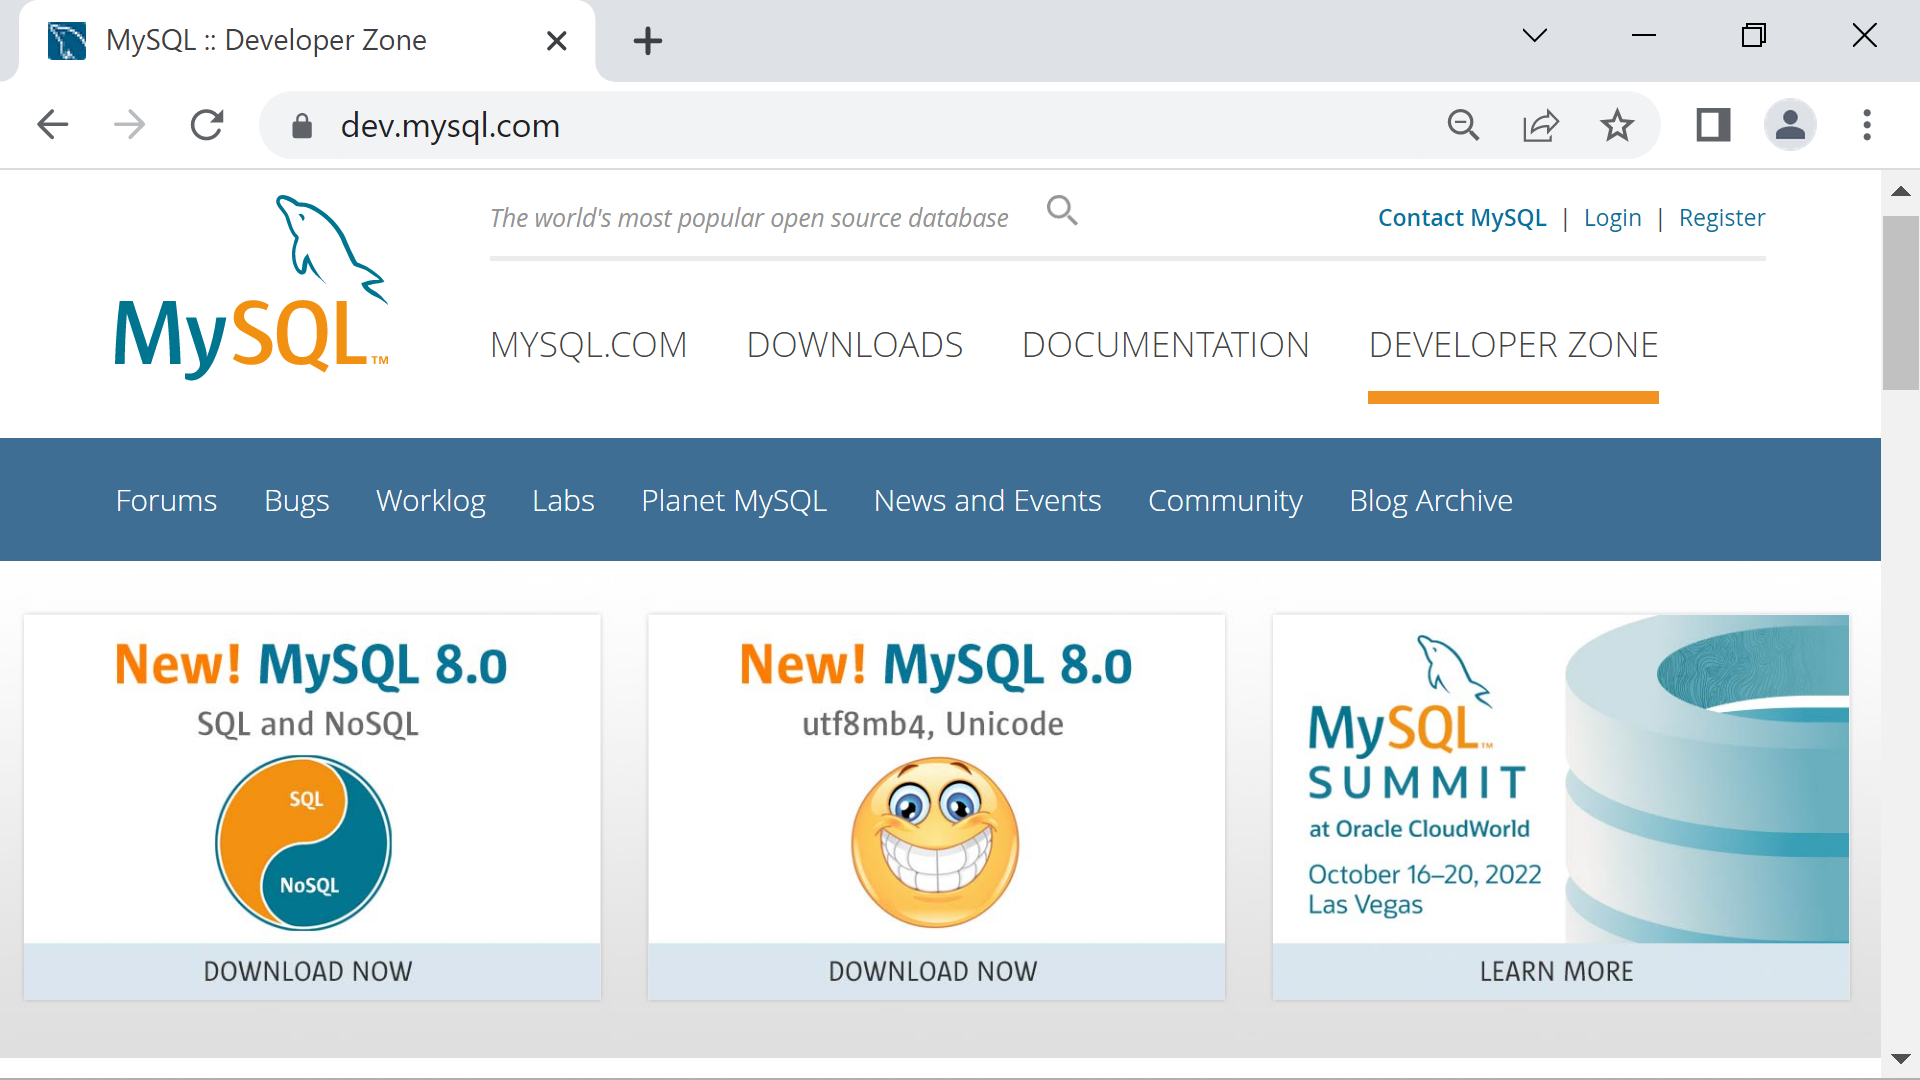 MySQL Developer Community